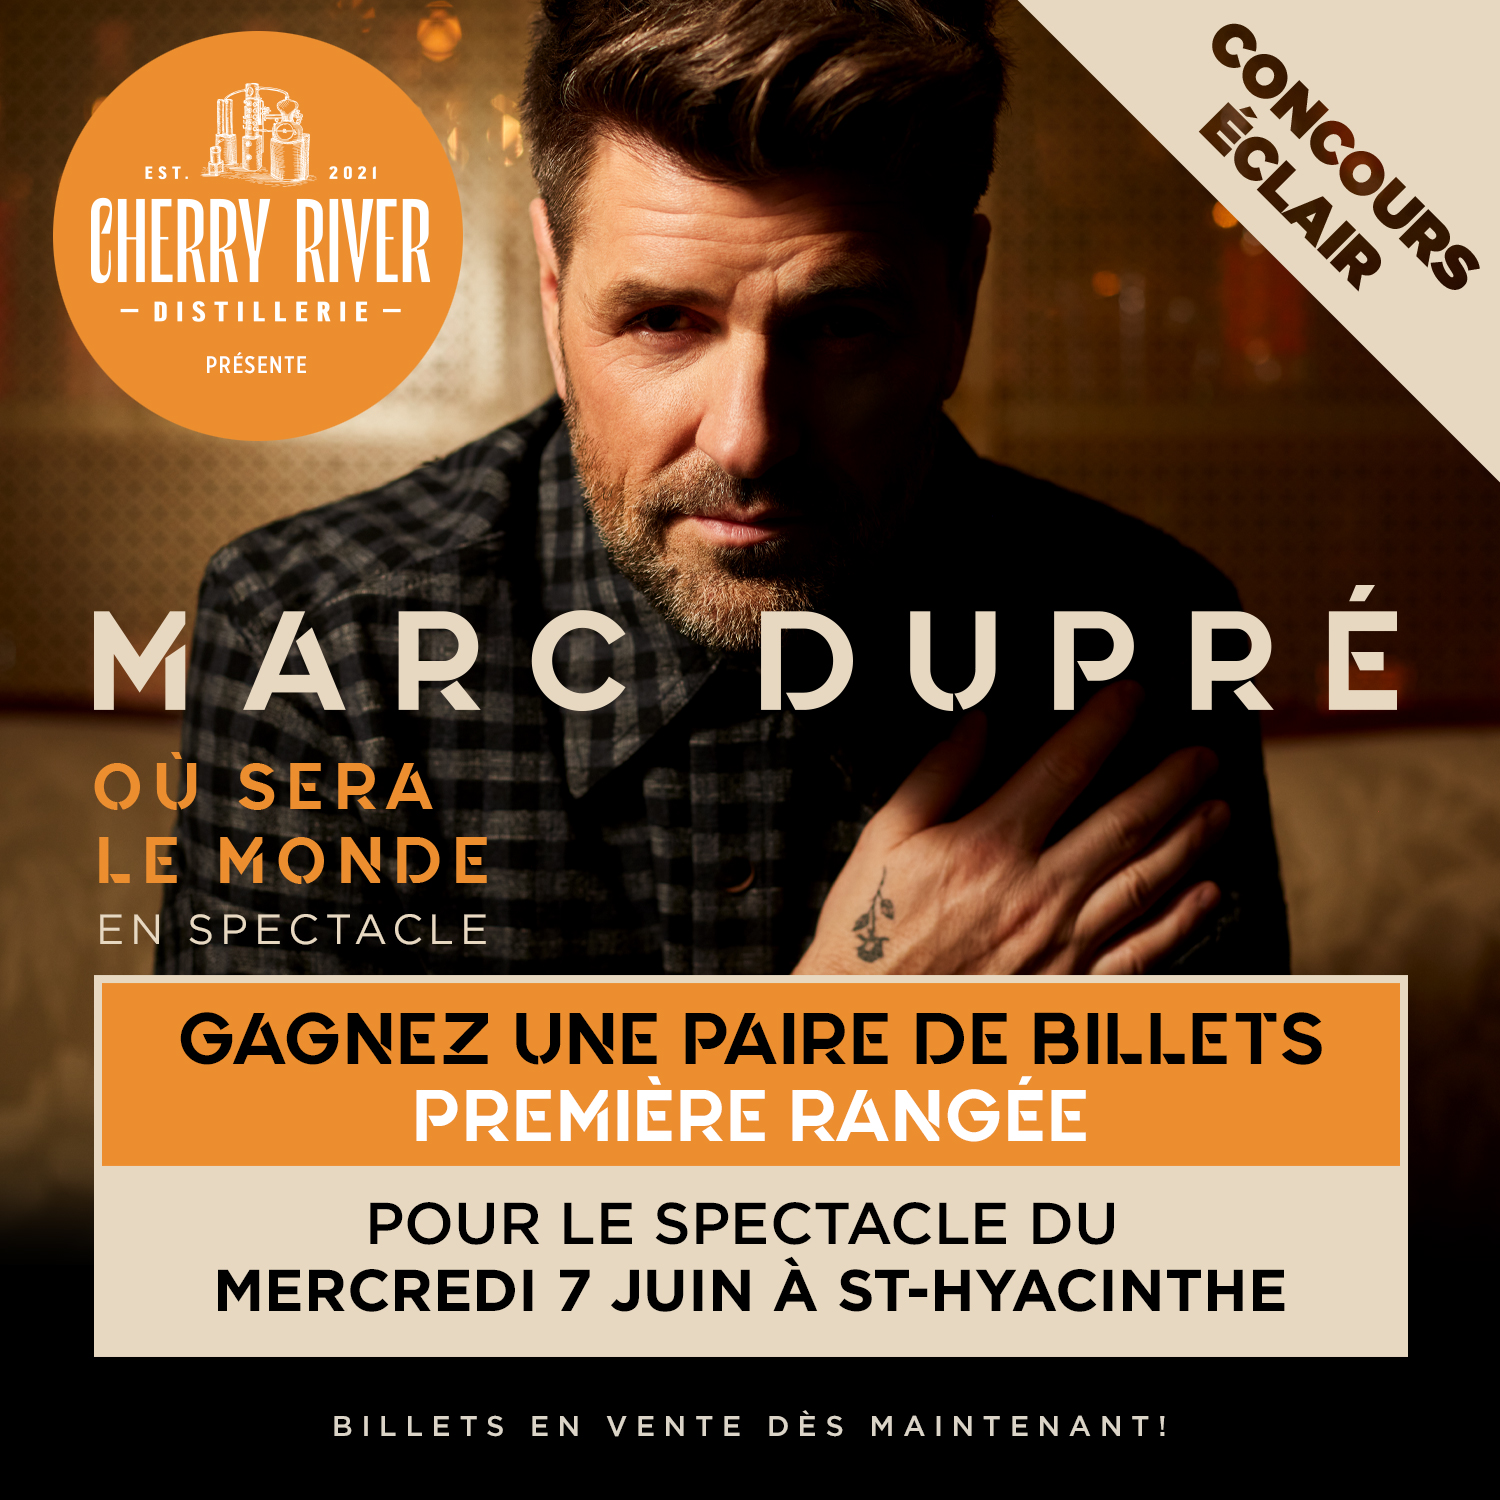 Concours Gagnez 2 billets pour le spectacle de Marc Dupré mercredi le 7 juin au Centre des arts Juliette-Lassonde à Saint-Hyacinthe!